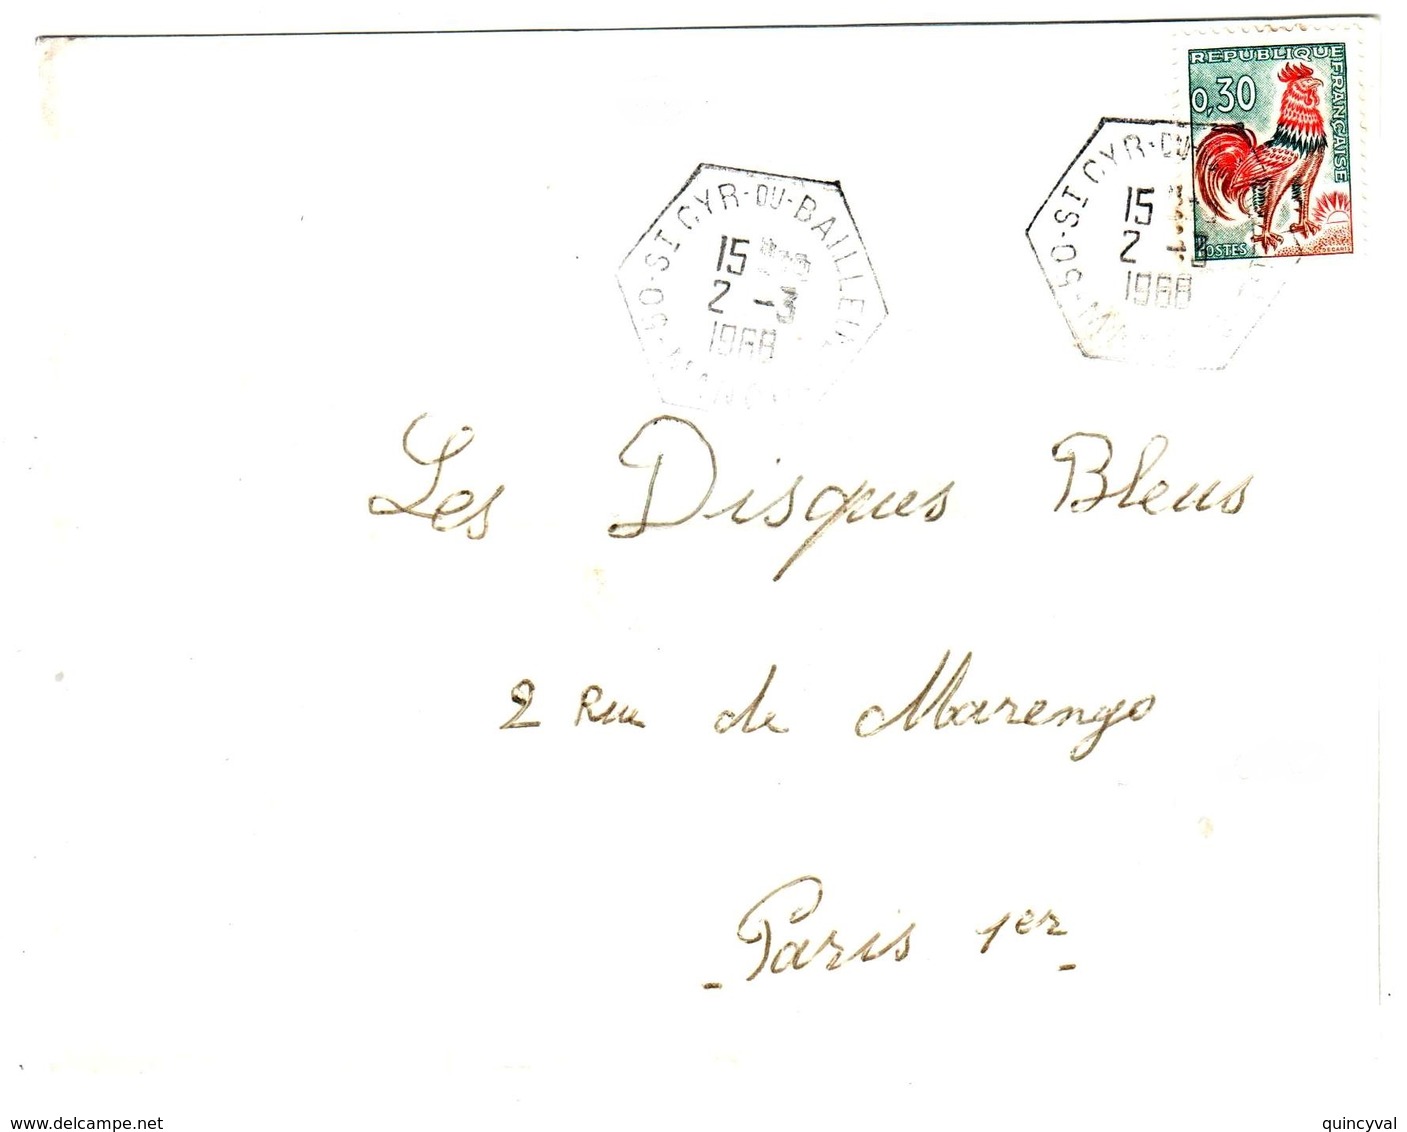 St CYR Du BAILLEUL 50 Manche Lettre 30c Coq Decaris Issu De Carnet Ob Recette Auxiliaire Rurale E9 RAR Hexagone 2 3 1968 - Covers & Documents